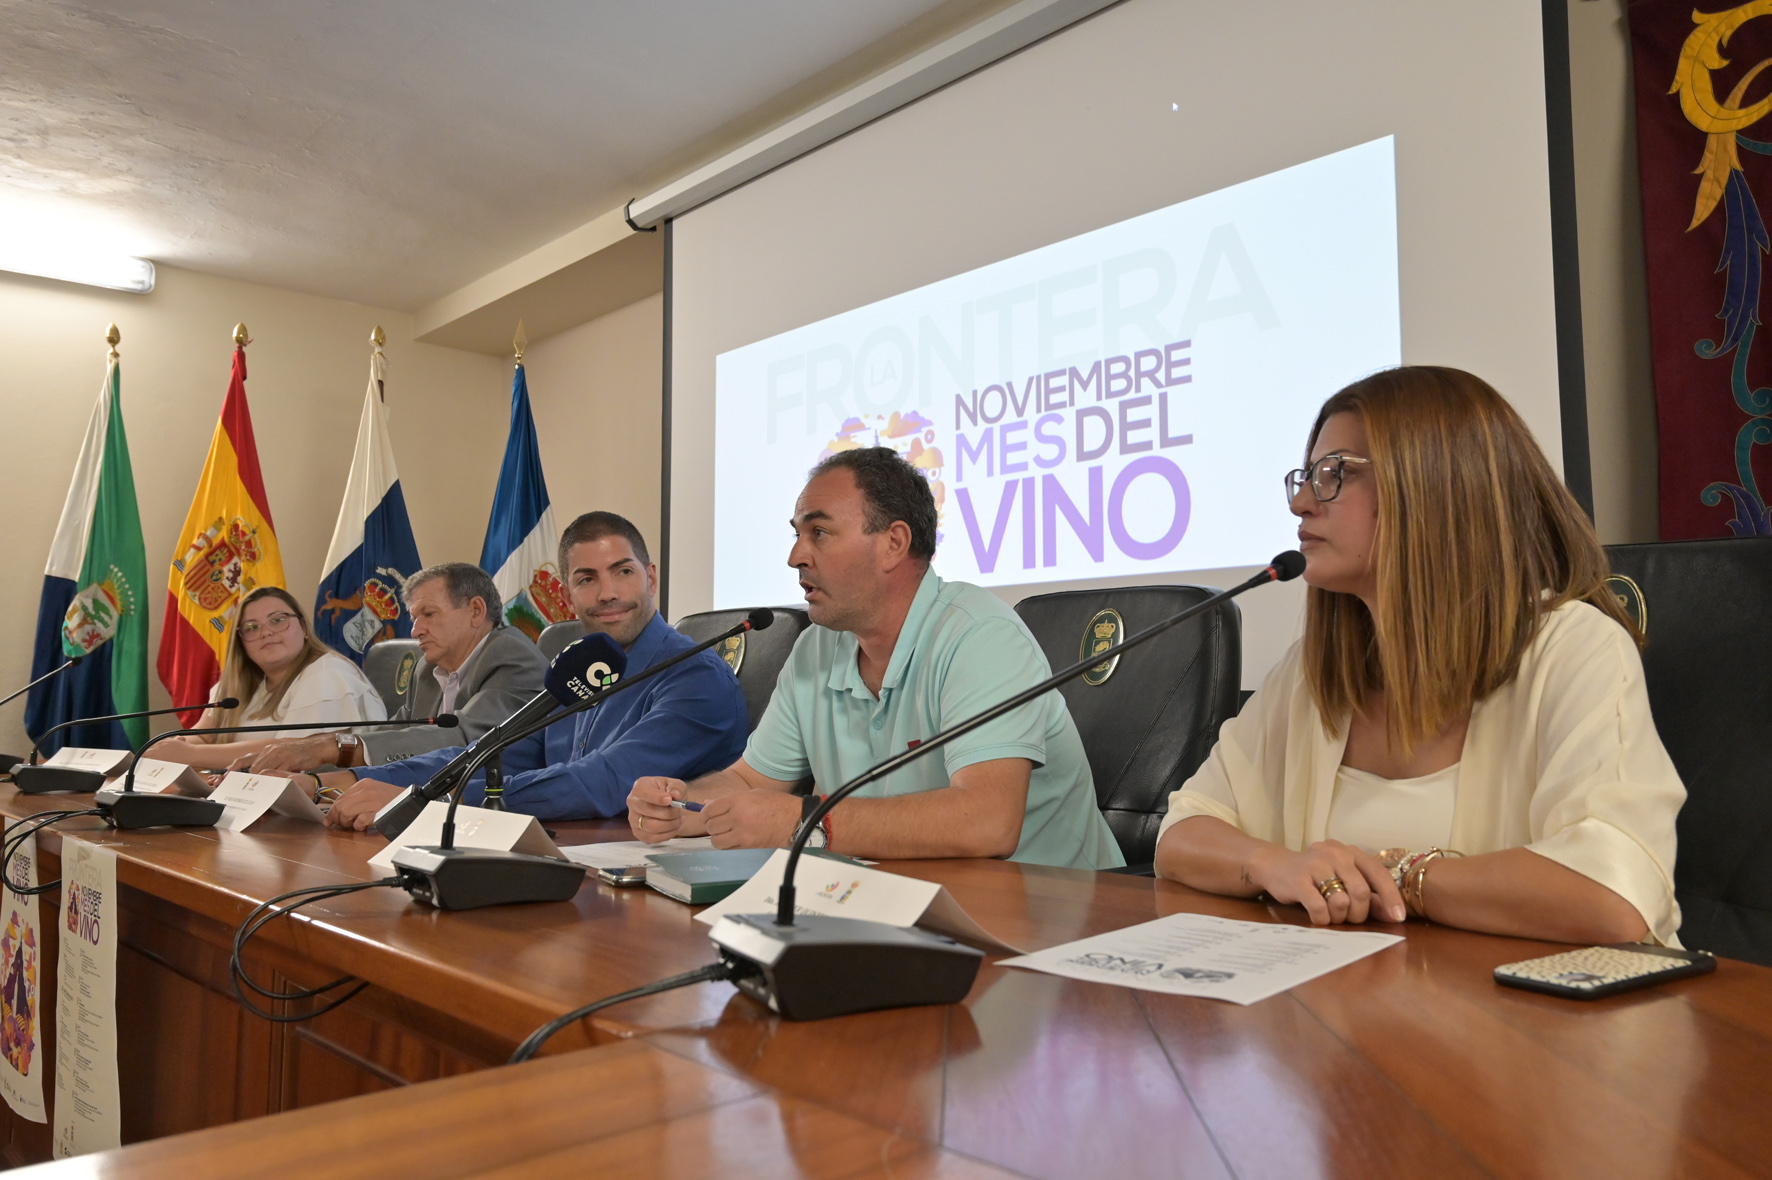 La Frontera celebra una nueva edición de “Noviembre, mes del vino”